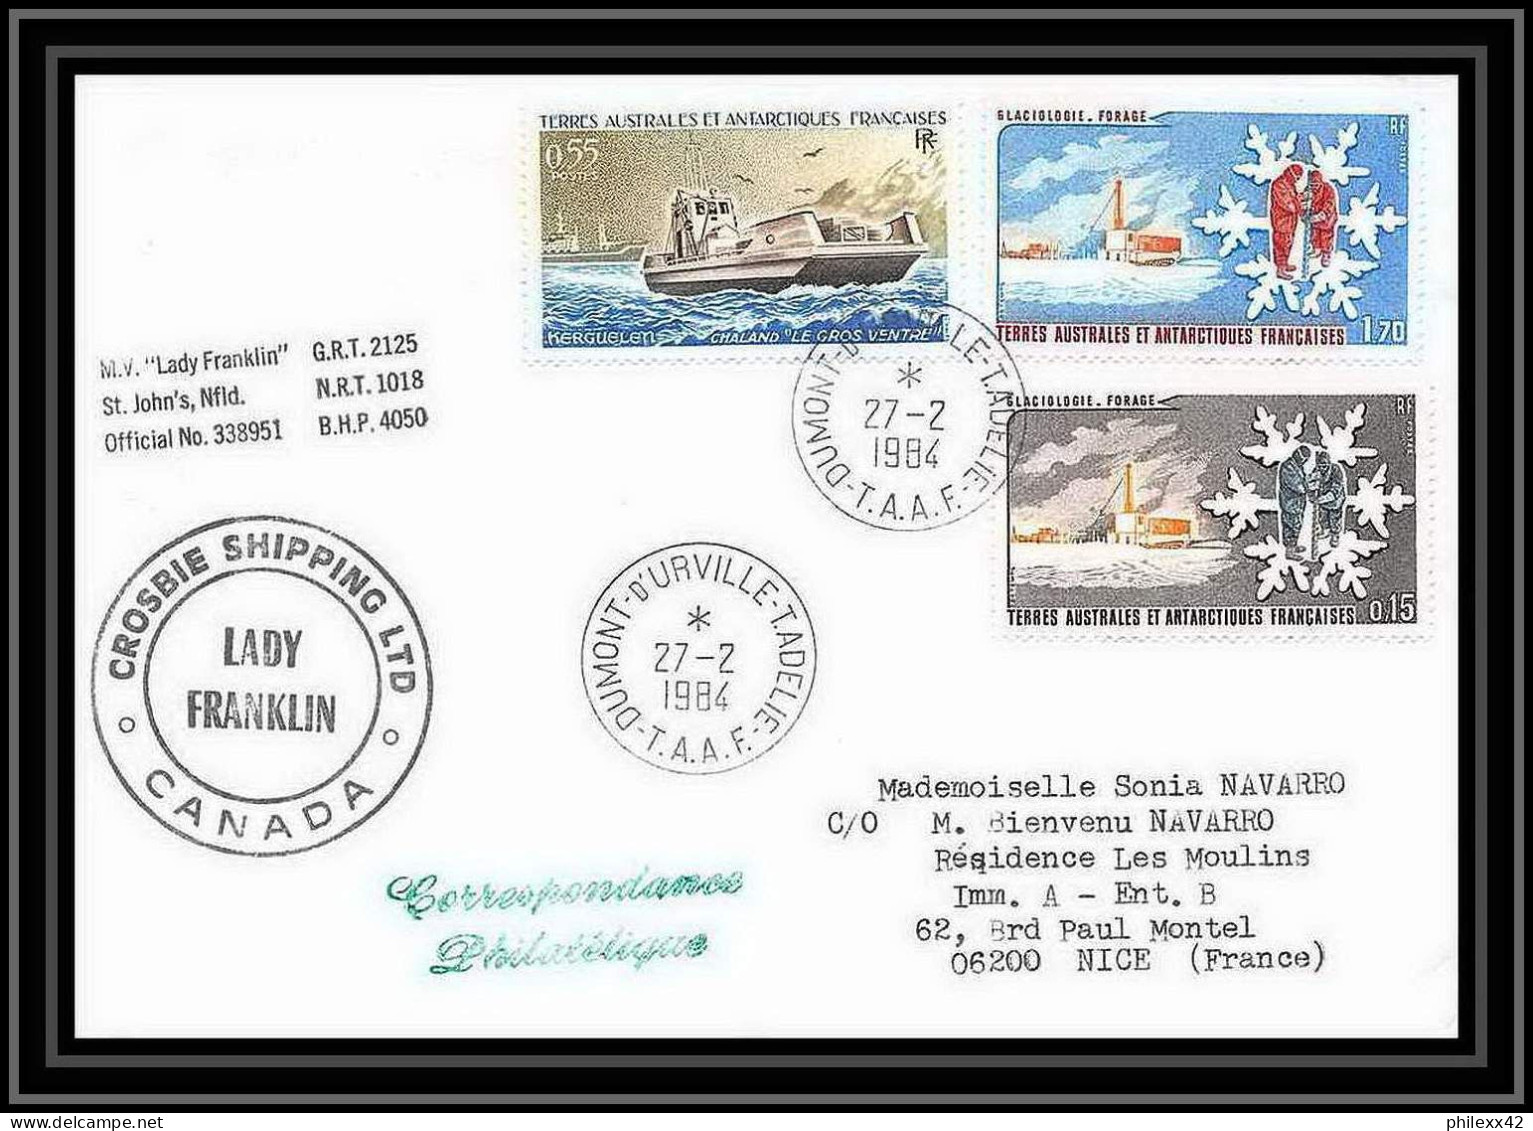 1463 Dumont D'urville 27/2/1984 TAAF Antarctic Terres Australes Lettre (cover) - Spedizioni Antartiche